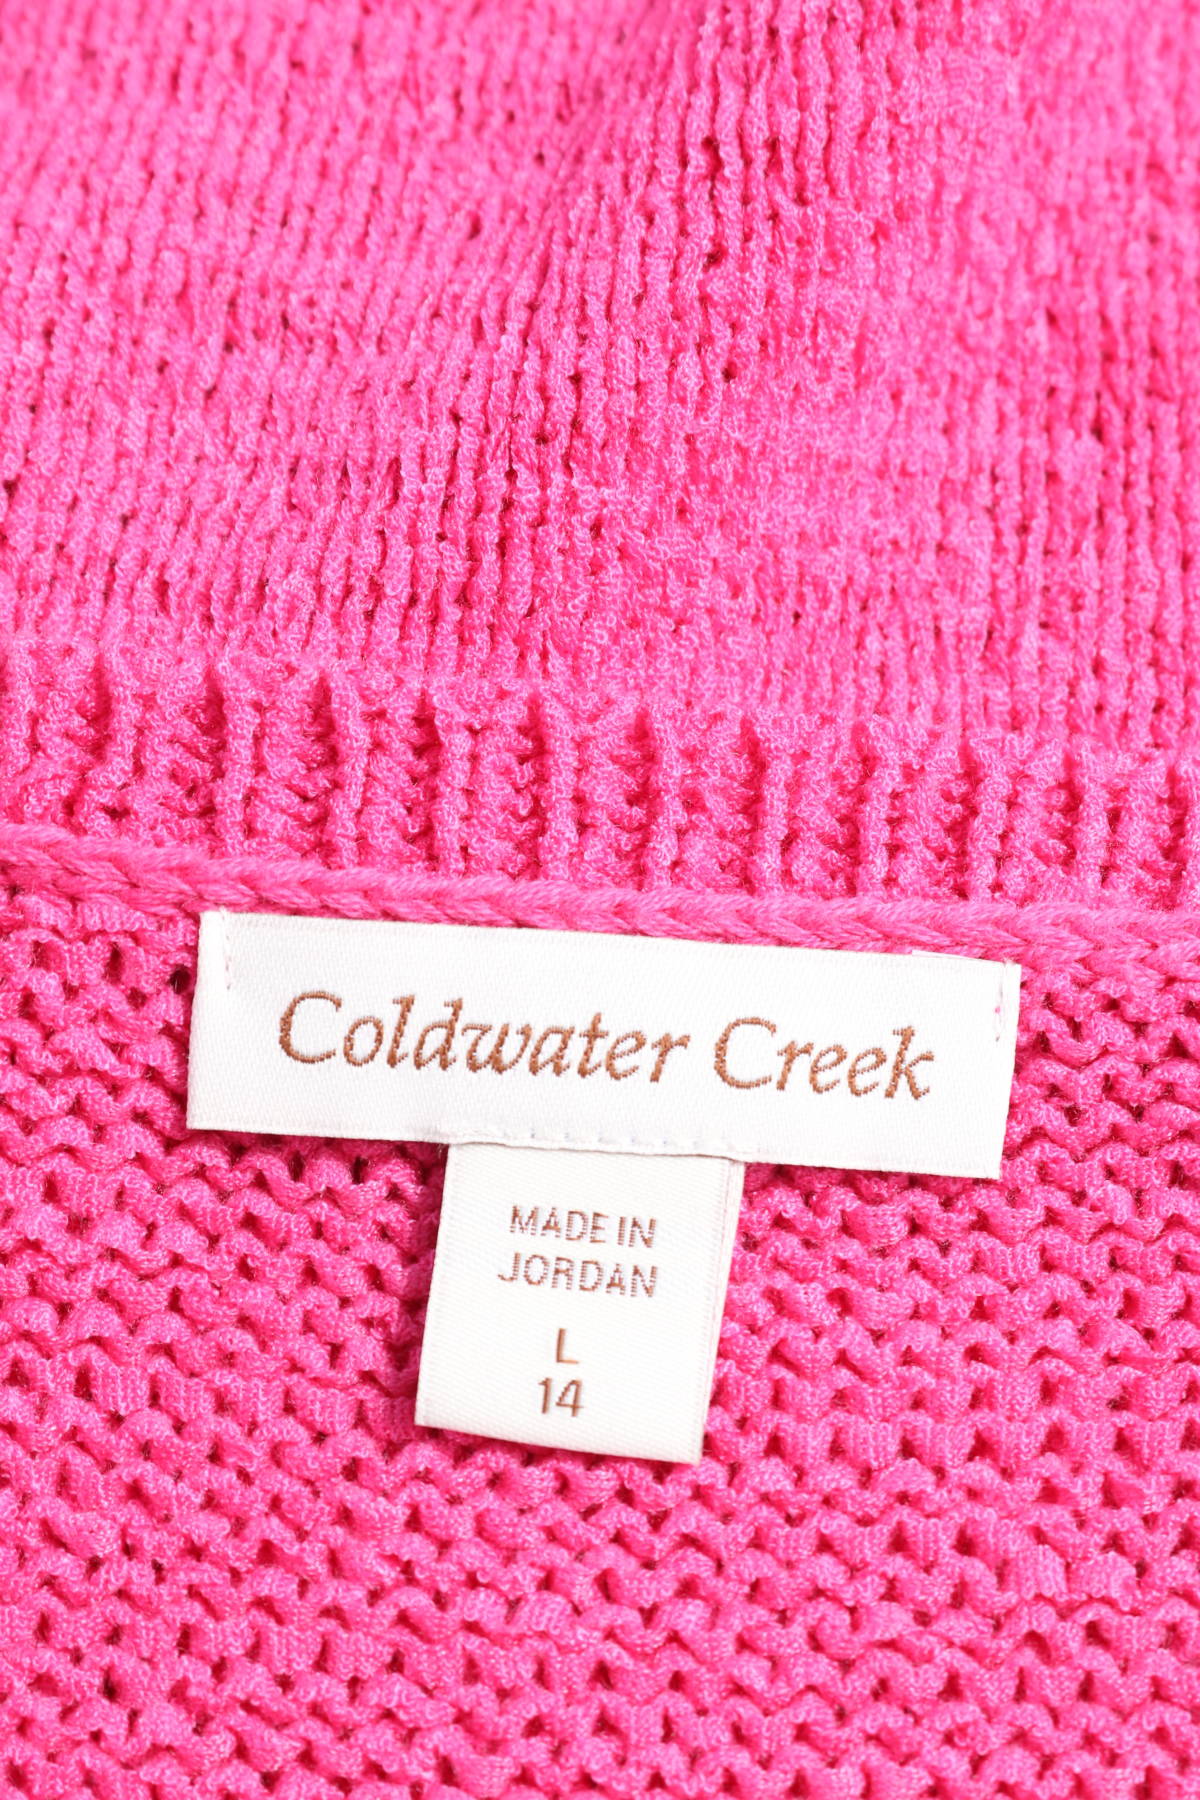 Пуловер COLDWATER CREEK3